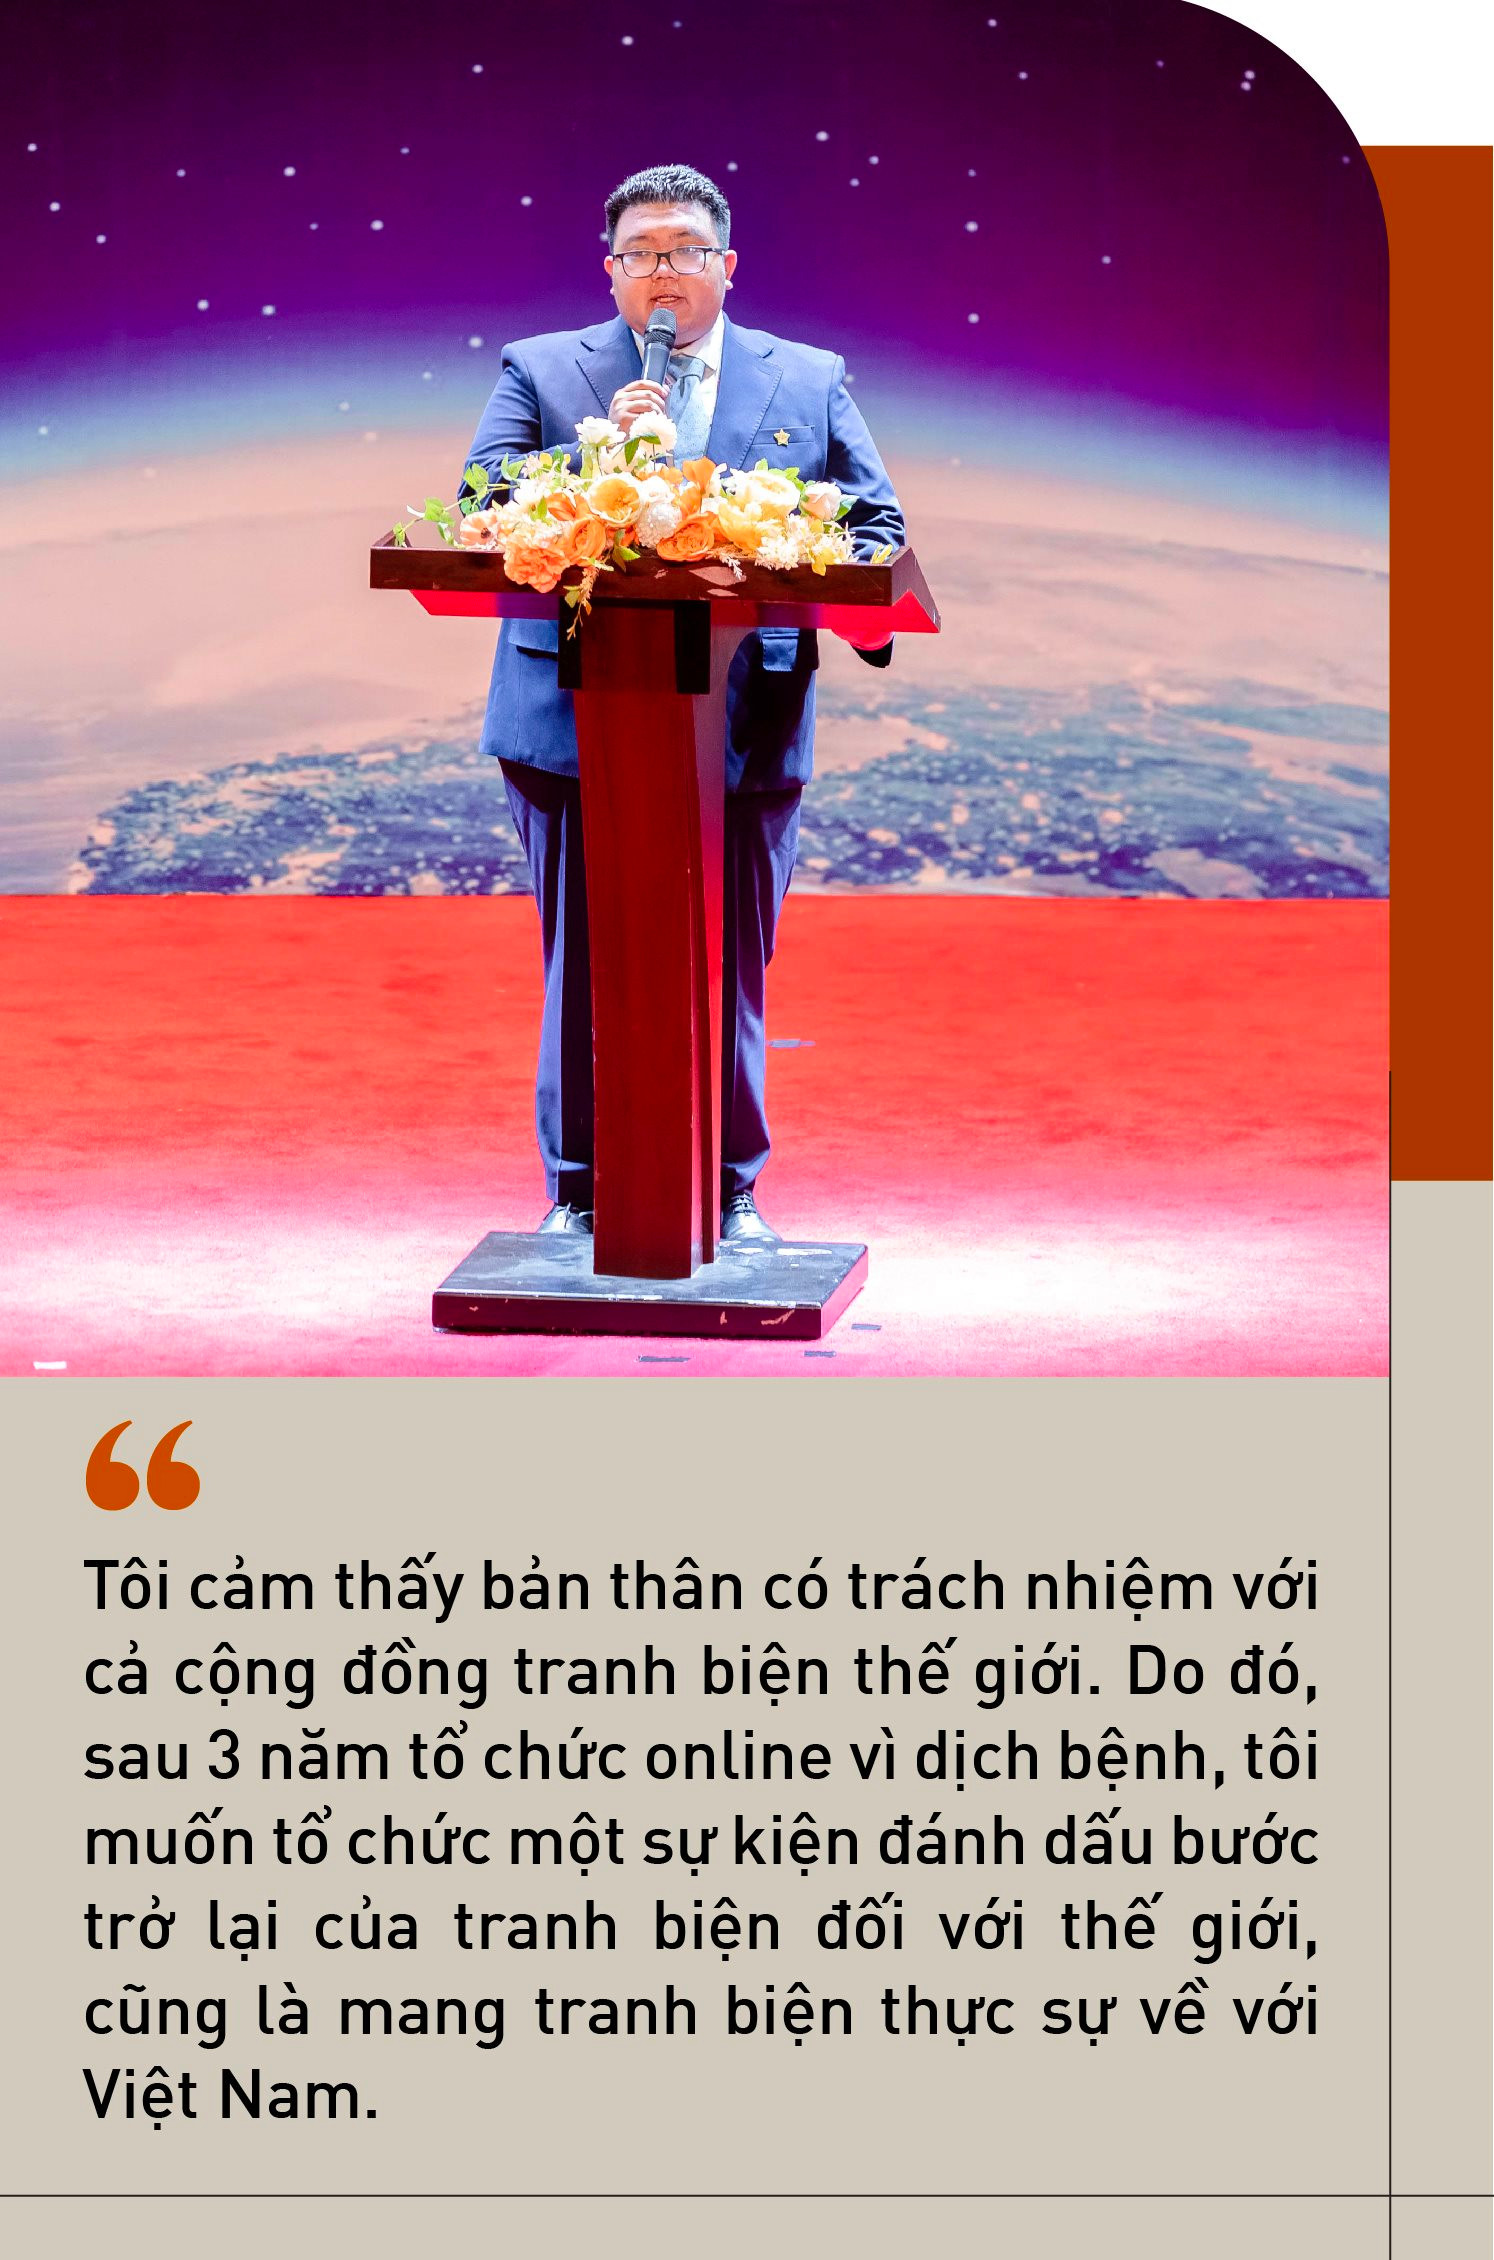 Vũ Anh Tuấn - 9x mang giải Vô địch Tranh biện thế giới về Việt Nam: “Sứ mệnh của tôi là mỗi ngày cố gắng một chút để mọi người hiểu đúng về Tranh biện” - Ảnh 8.